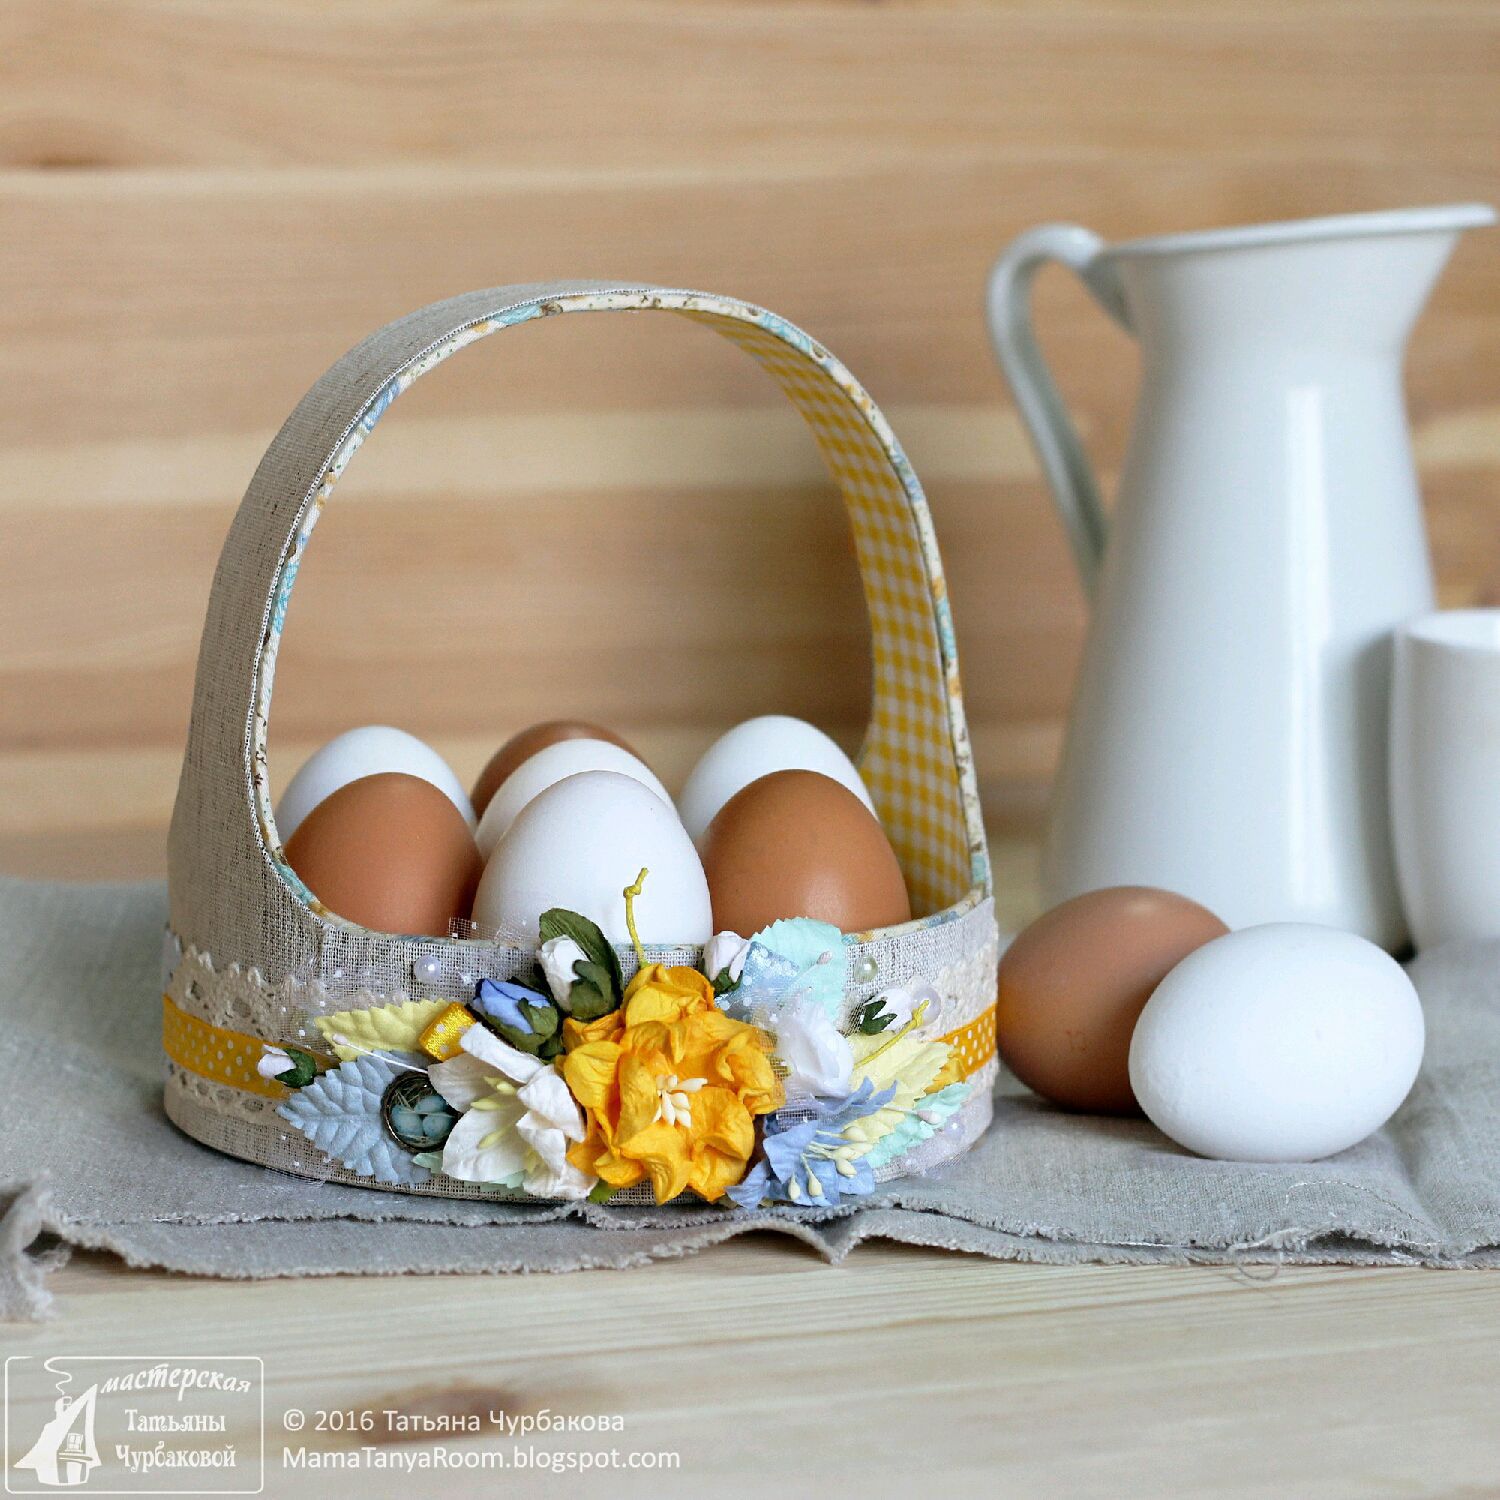 Пасхальный подарок своими руками. Пасхальная корзинка для яиц. Пасхальное яйцо корзина. Корзинка с яйцами. Корзиночка с яйцами.